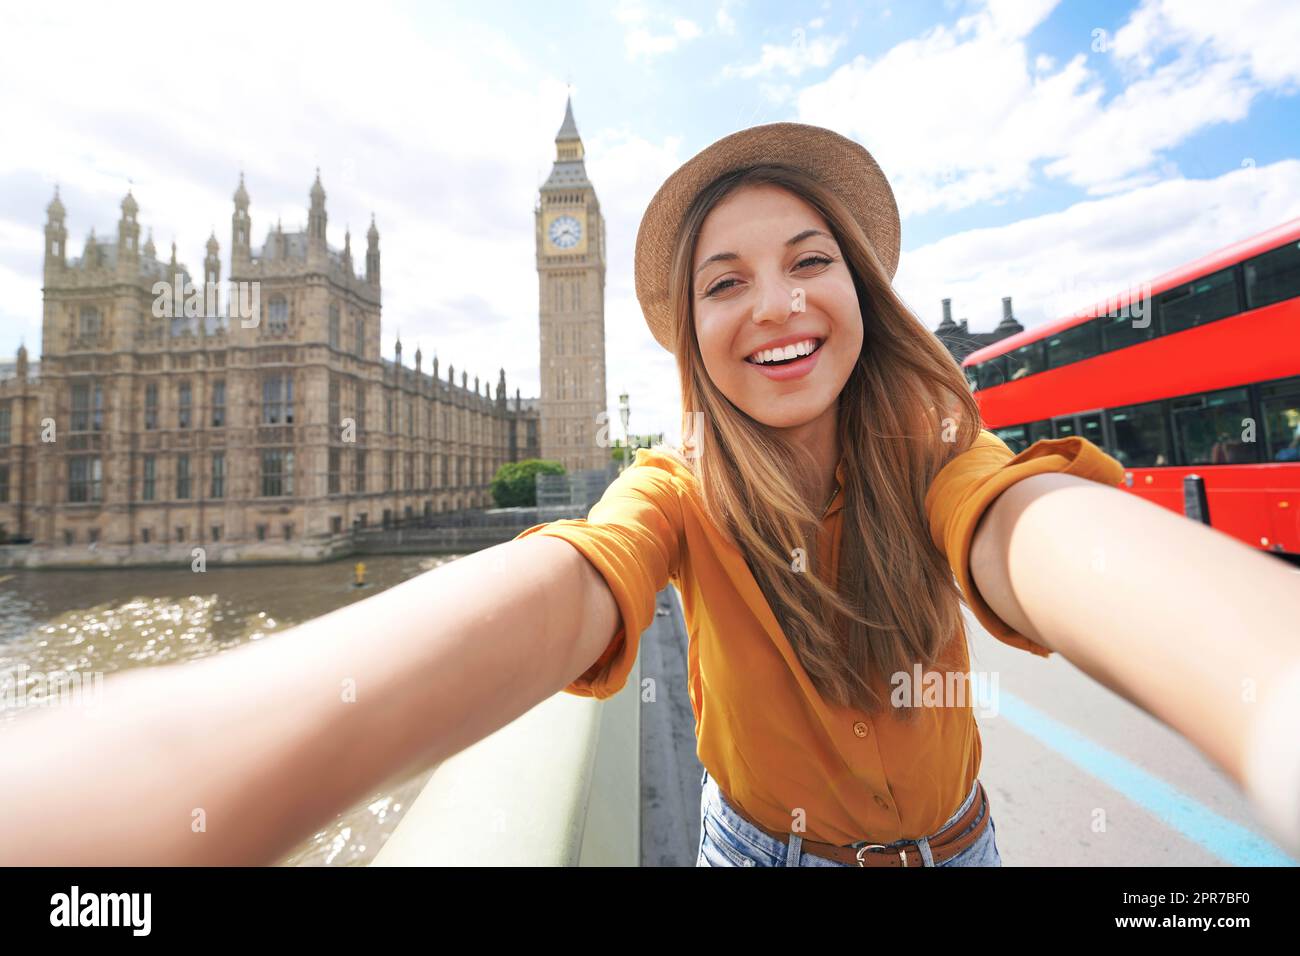 Lächelndes Touristenmädchen, das Selbstporträt in London macht. Selfie-Foto einer glücklichen Frau, die in London mit dem Big Ben Tower, dem Westminster Palace und dem roten Doppeldeckerbus an sonnigen Sommertagen reist. Stockfoto